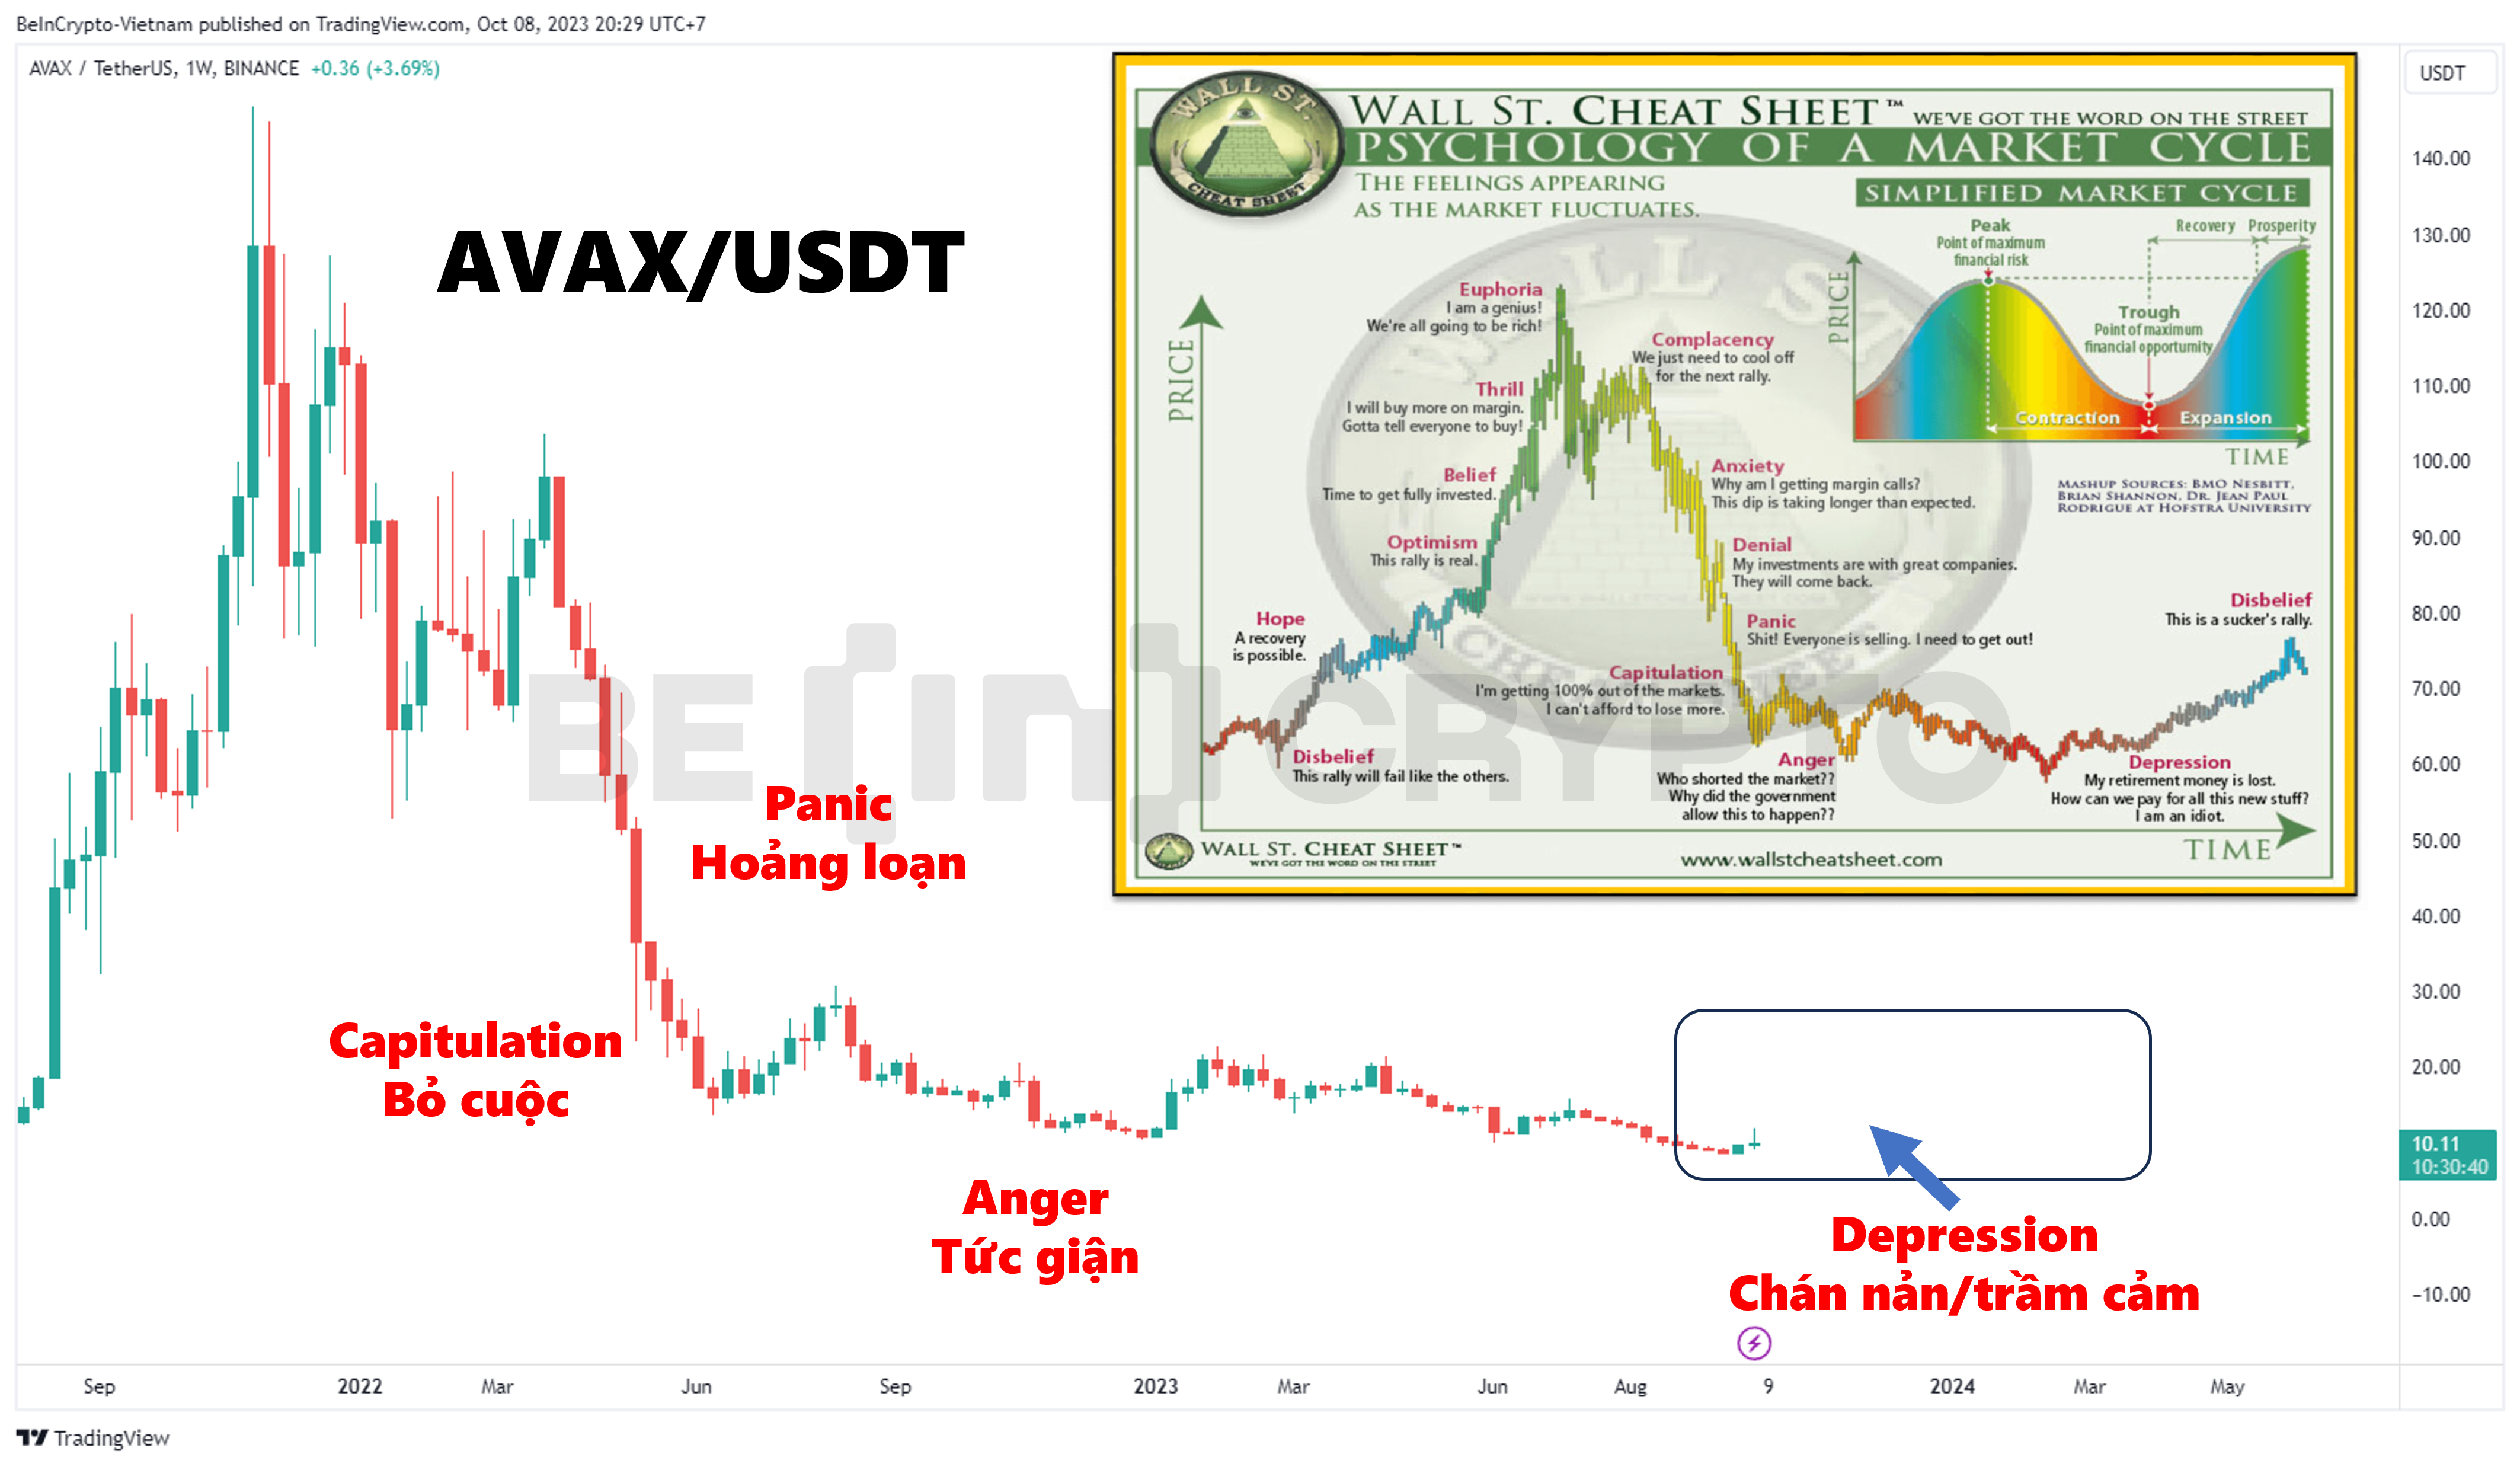 Giá AVAX và chu kỳ tâm lý thị trường, khung thời gian tuần.